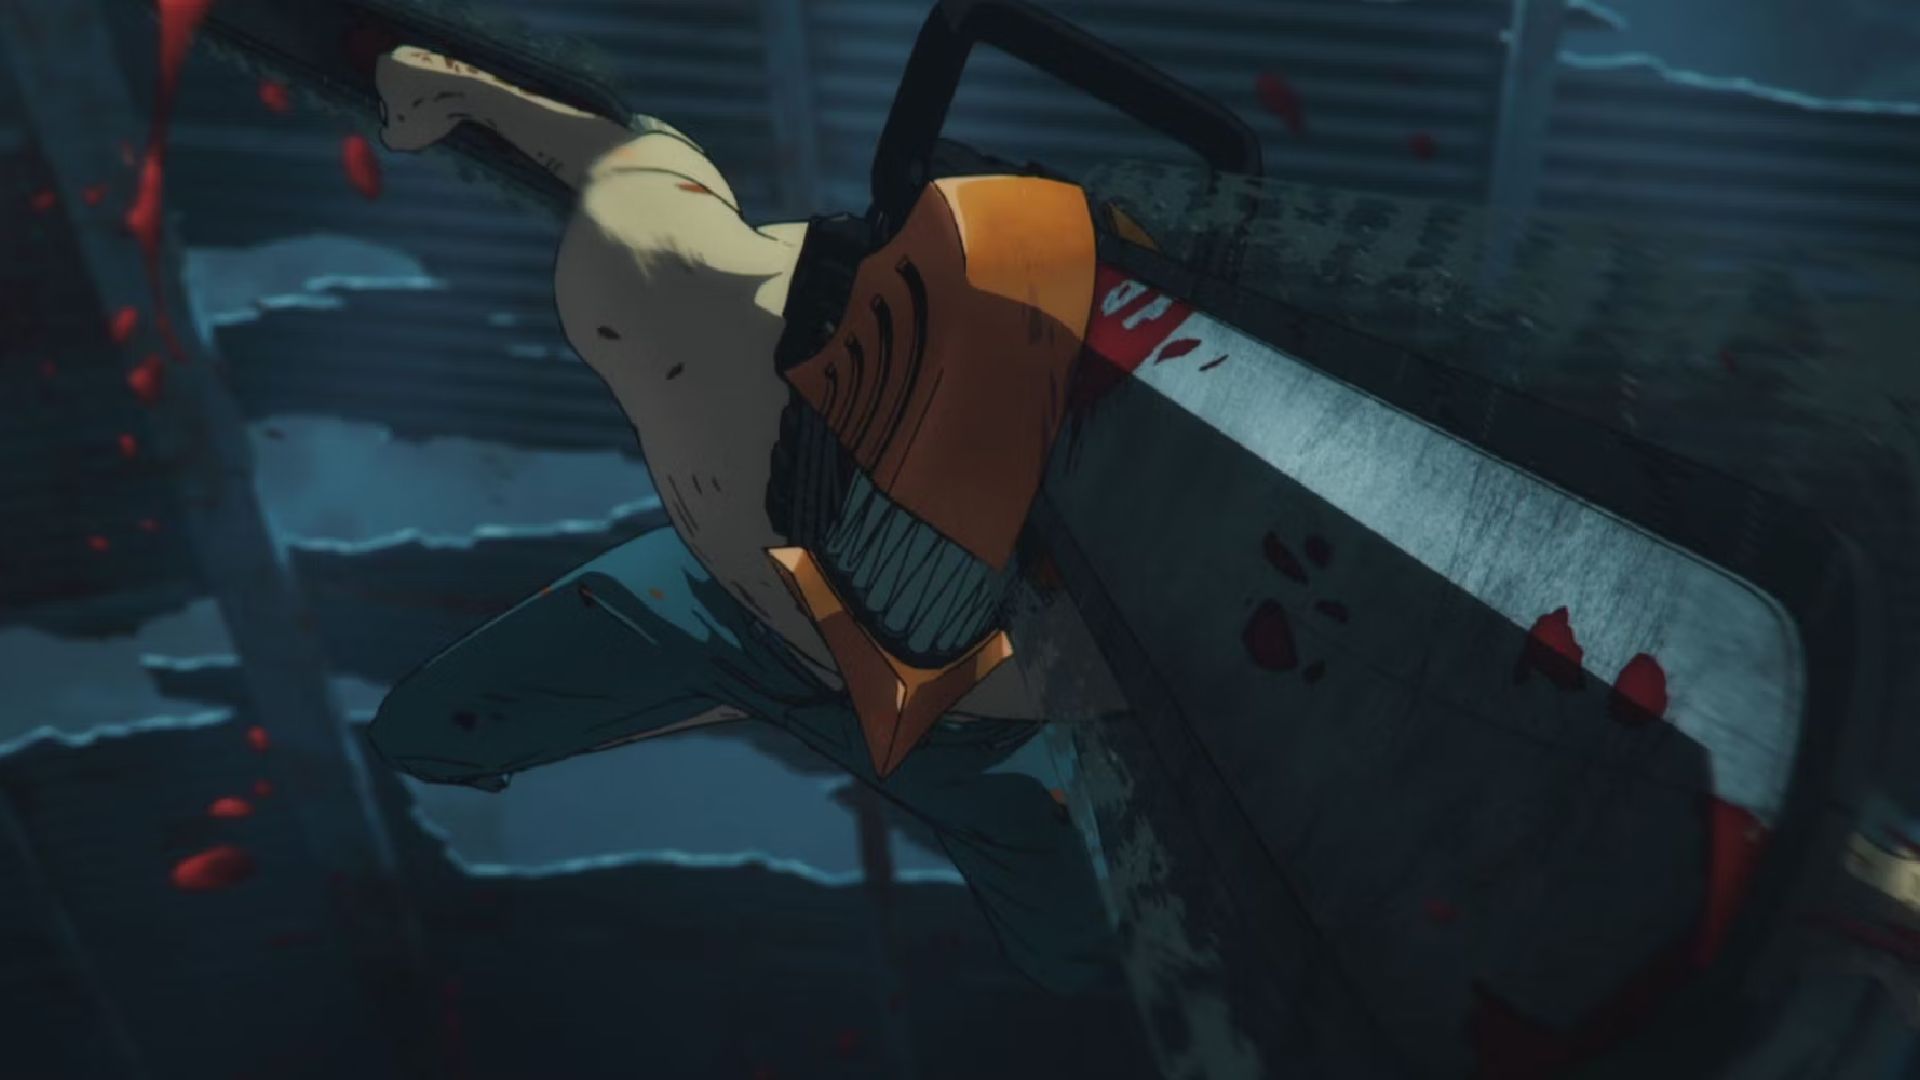 “Chainsaw Man”: ¿el anime del año? Nuestras impresiones del primer episodio